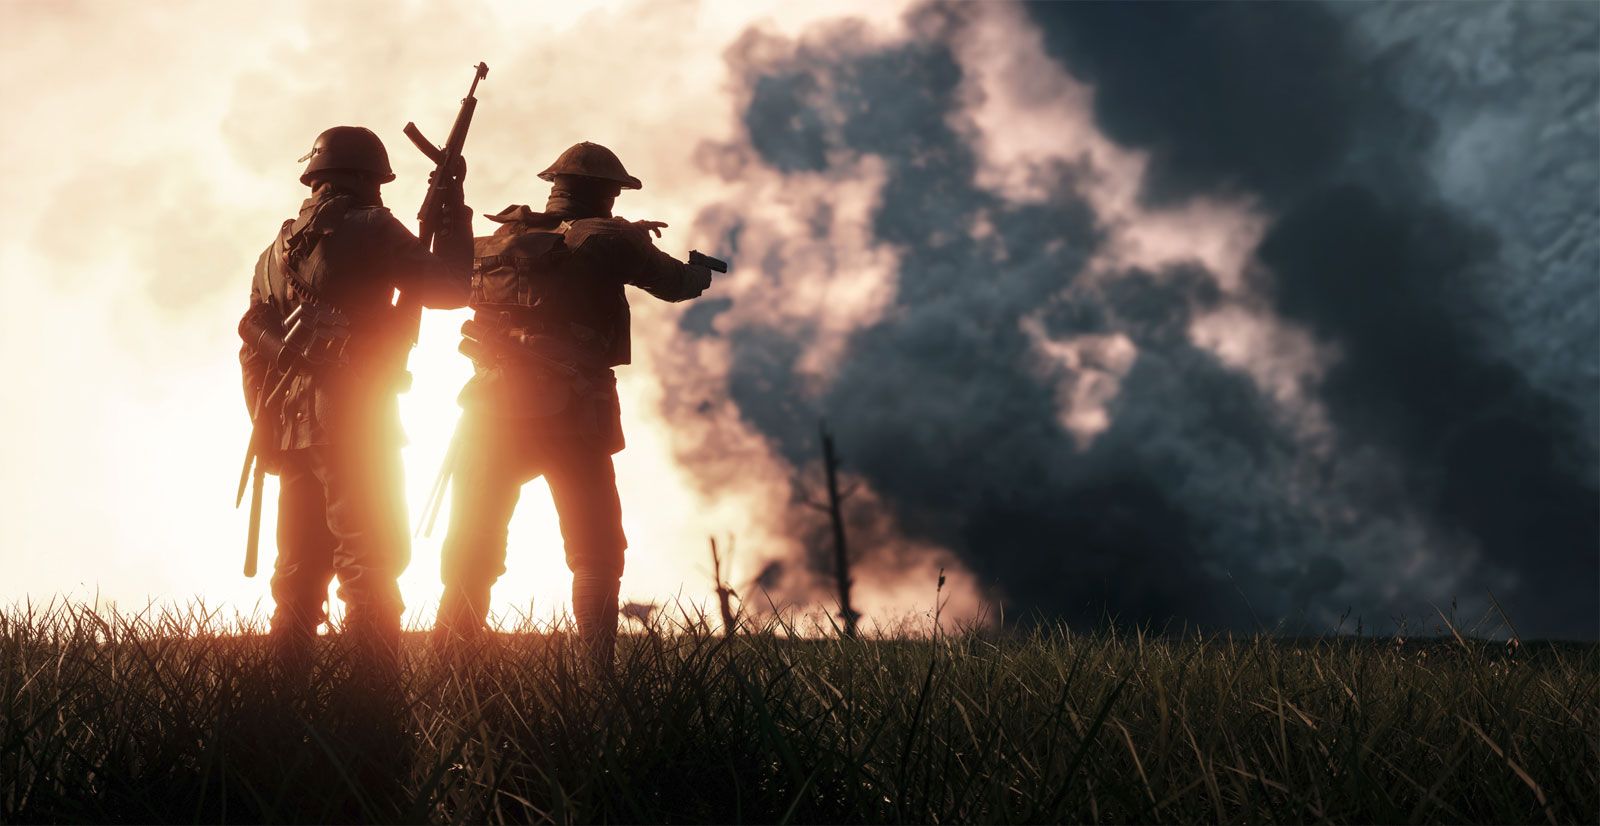 Ceny Battlefield 1 Rewolucja oraz Przepustki Premium ostro ścięte na święta